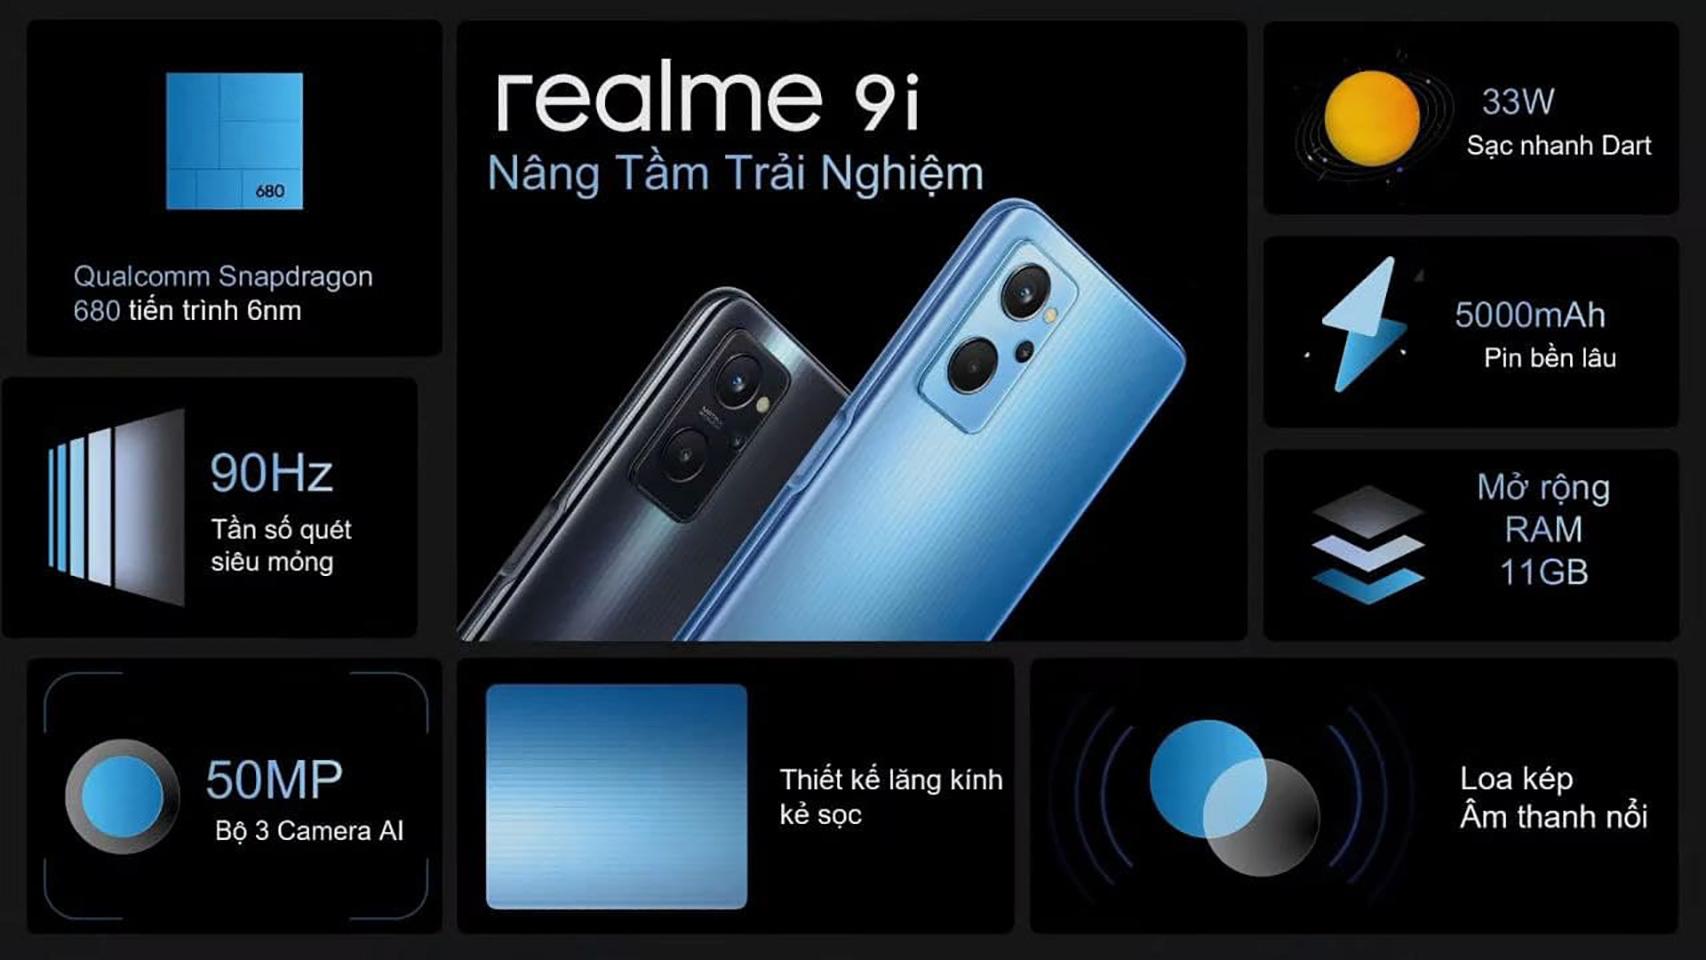 Realme 9i 5G: características, ficha técnica y precio